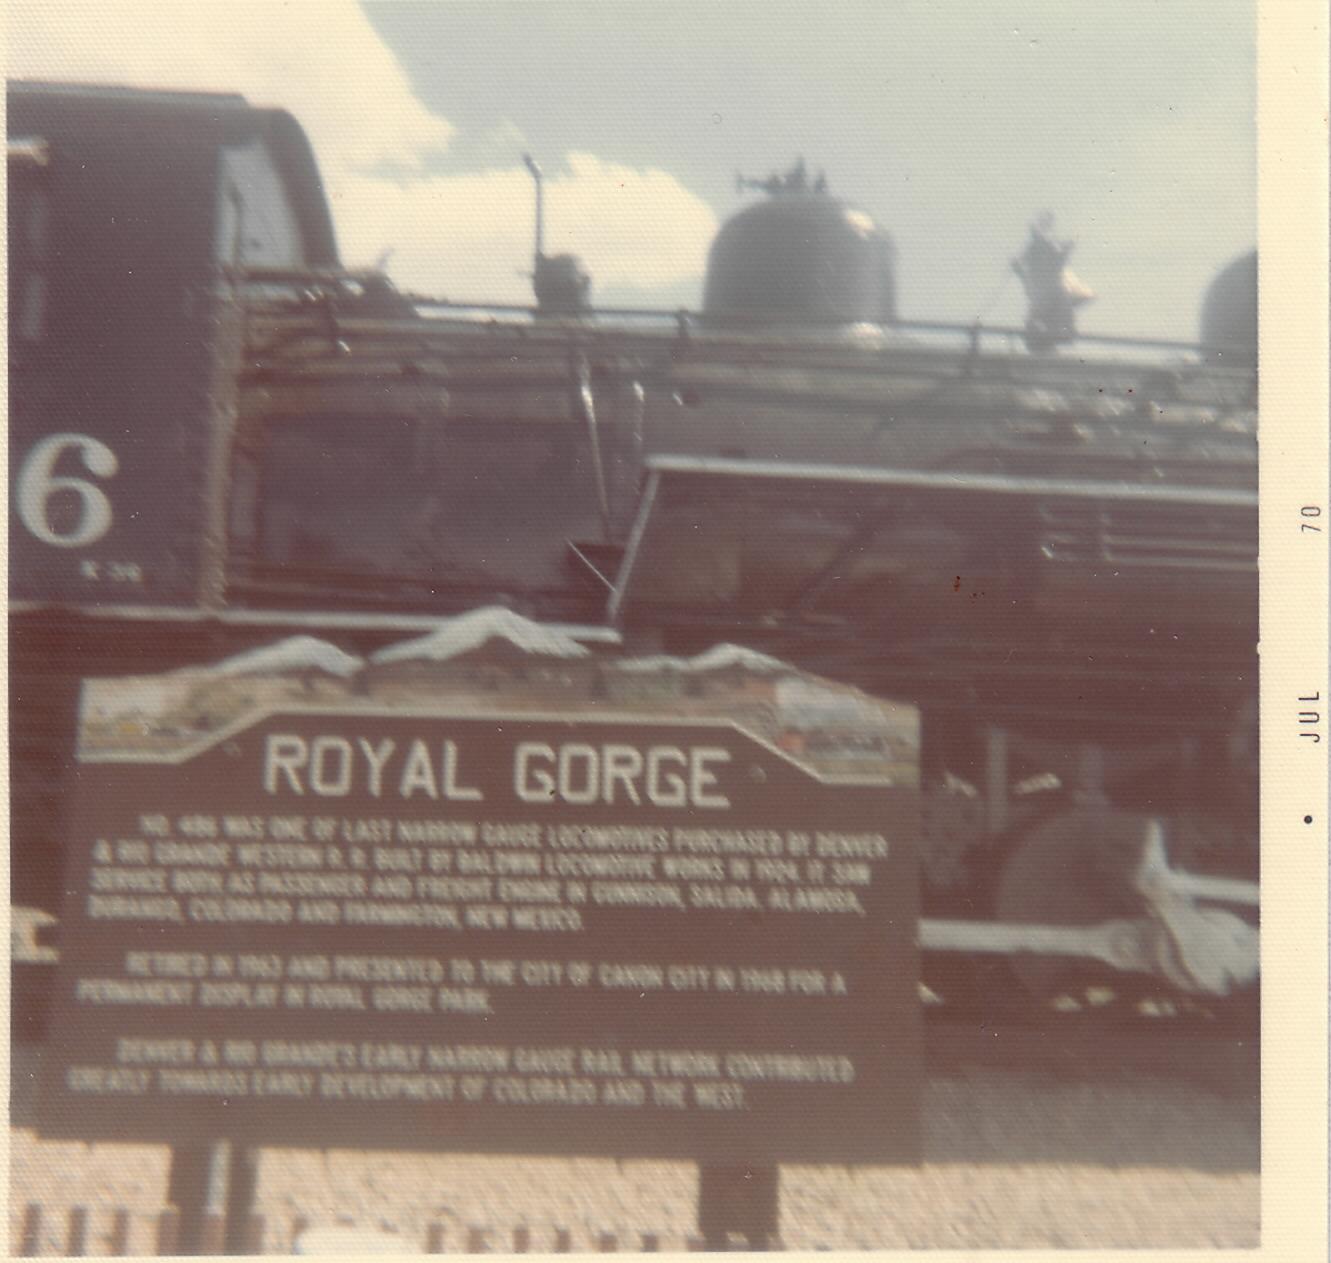 royal gorge 486 July 1970 side.jpg